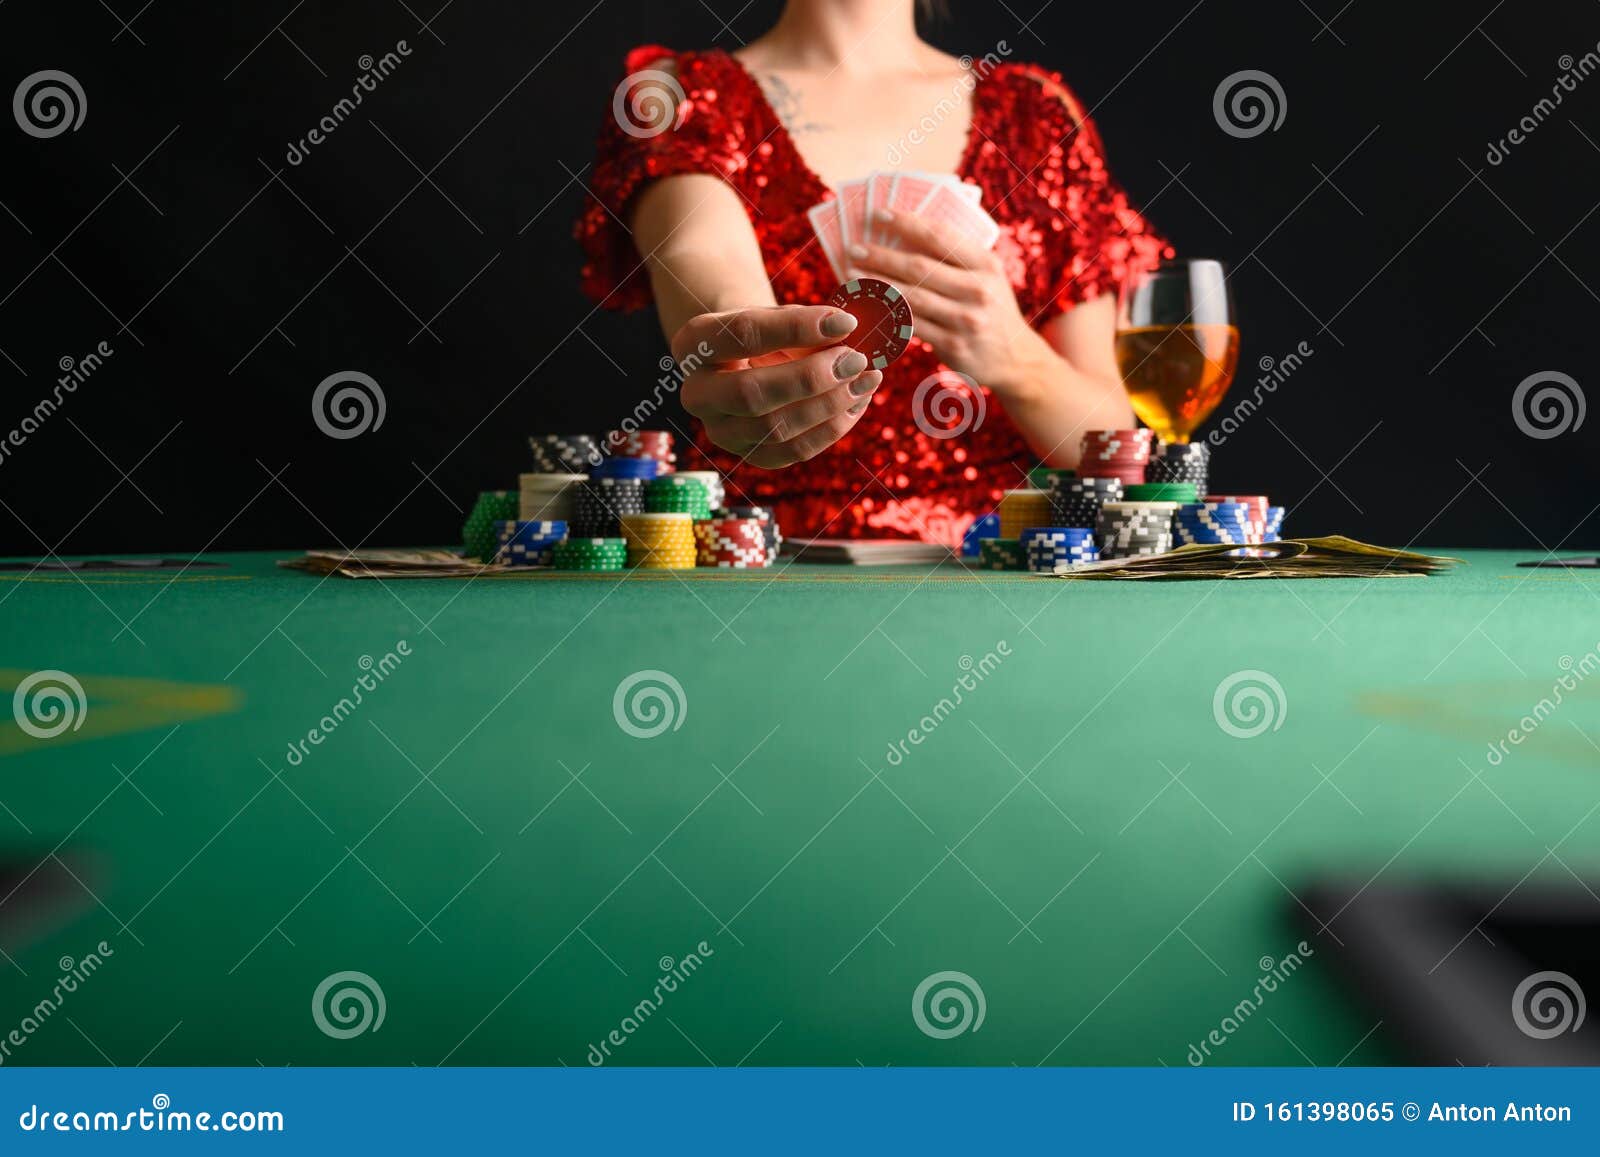 Картинки девушка играет в карты на онлайн фильм про покер